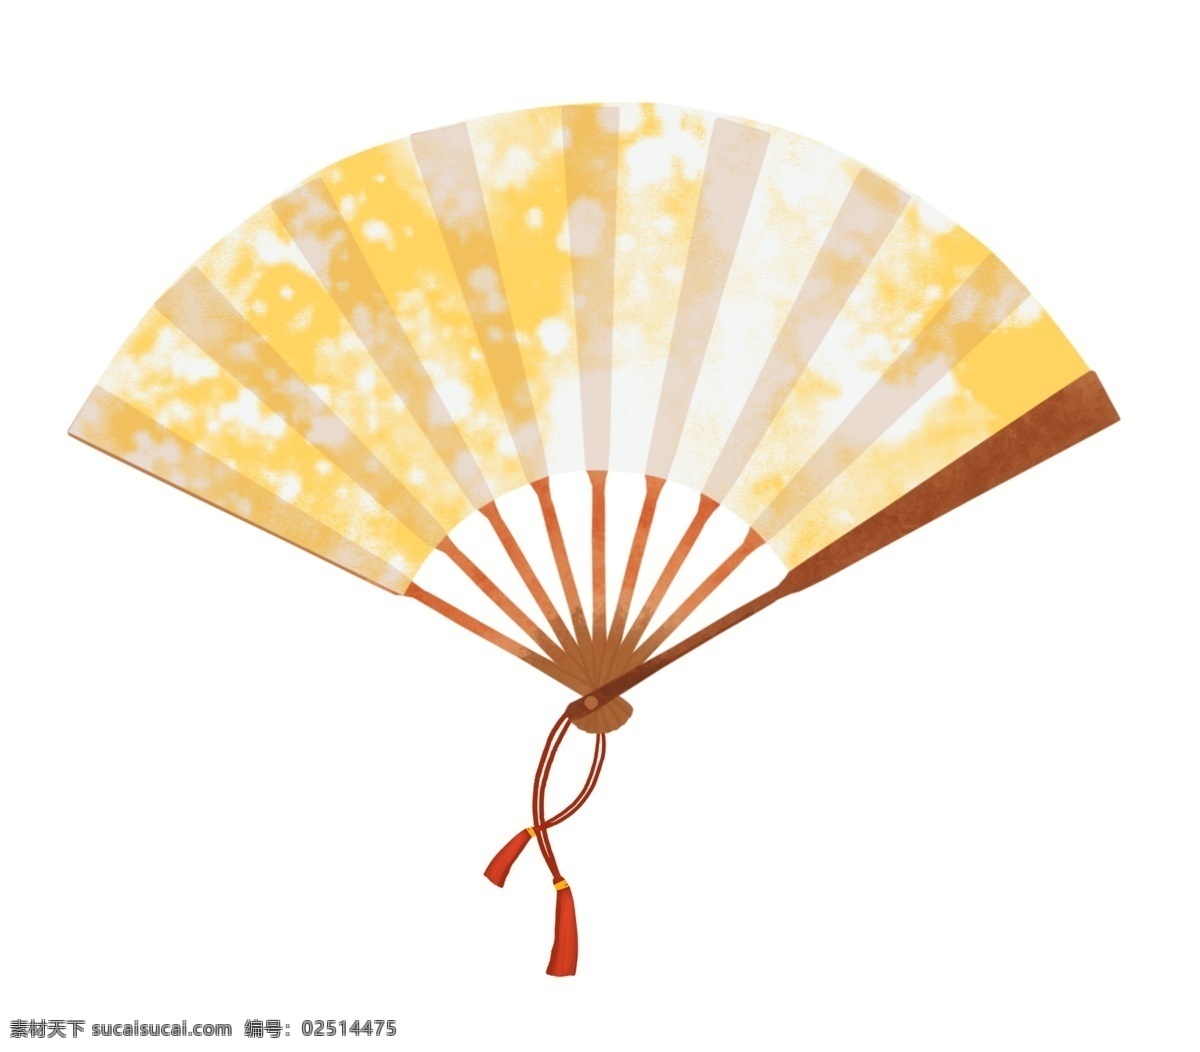 中国 古典 印花 黄色 扇子 中国结 插画 中国风扇子 卡通扇子 印花扇子 黄色扇子 挂件 挂饰